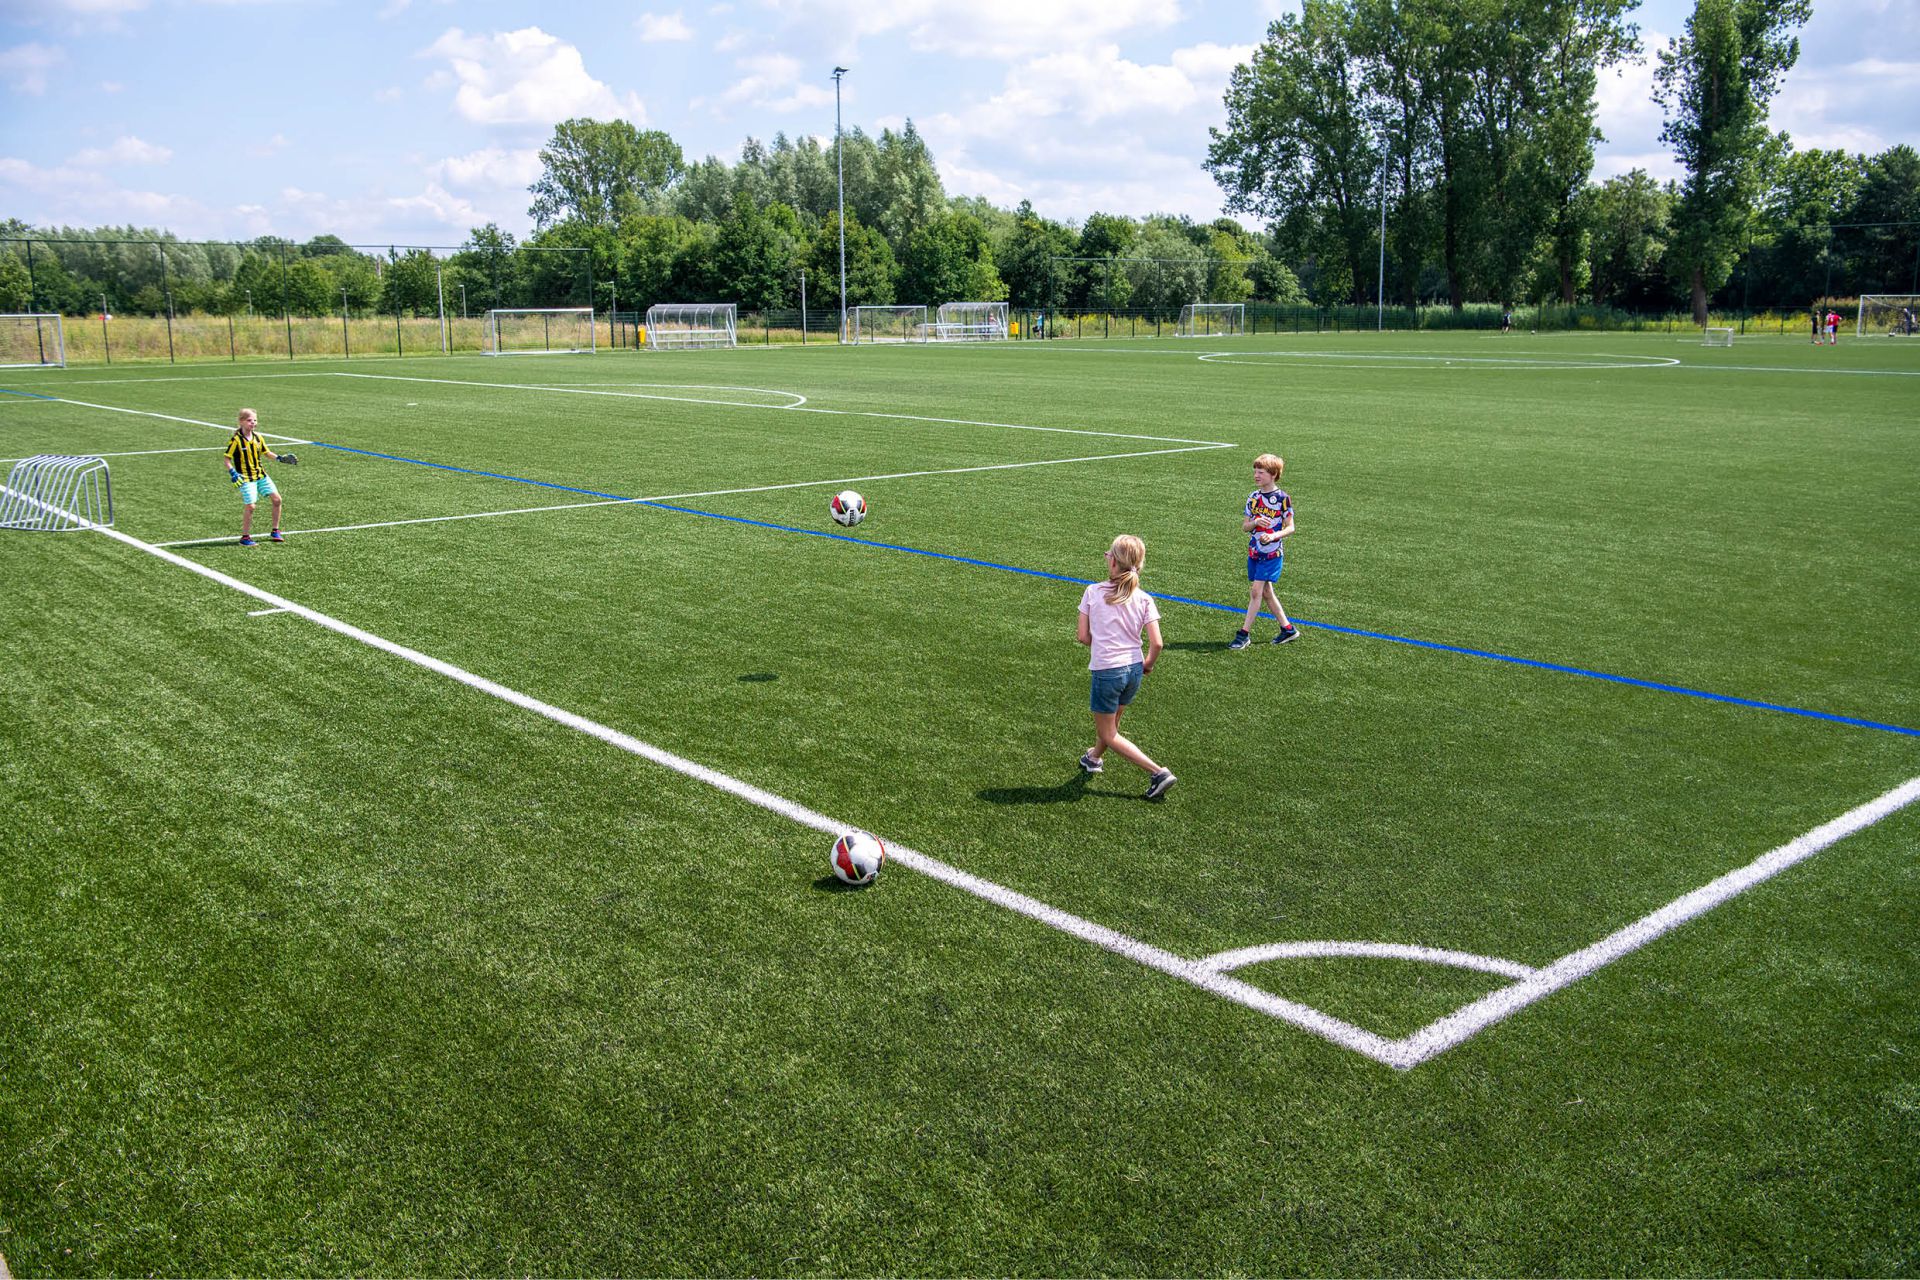 Voetbalveld met voetballende kinderen